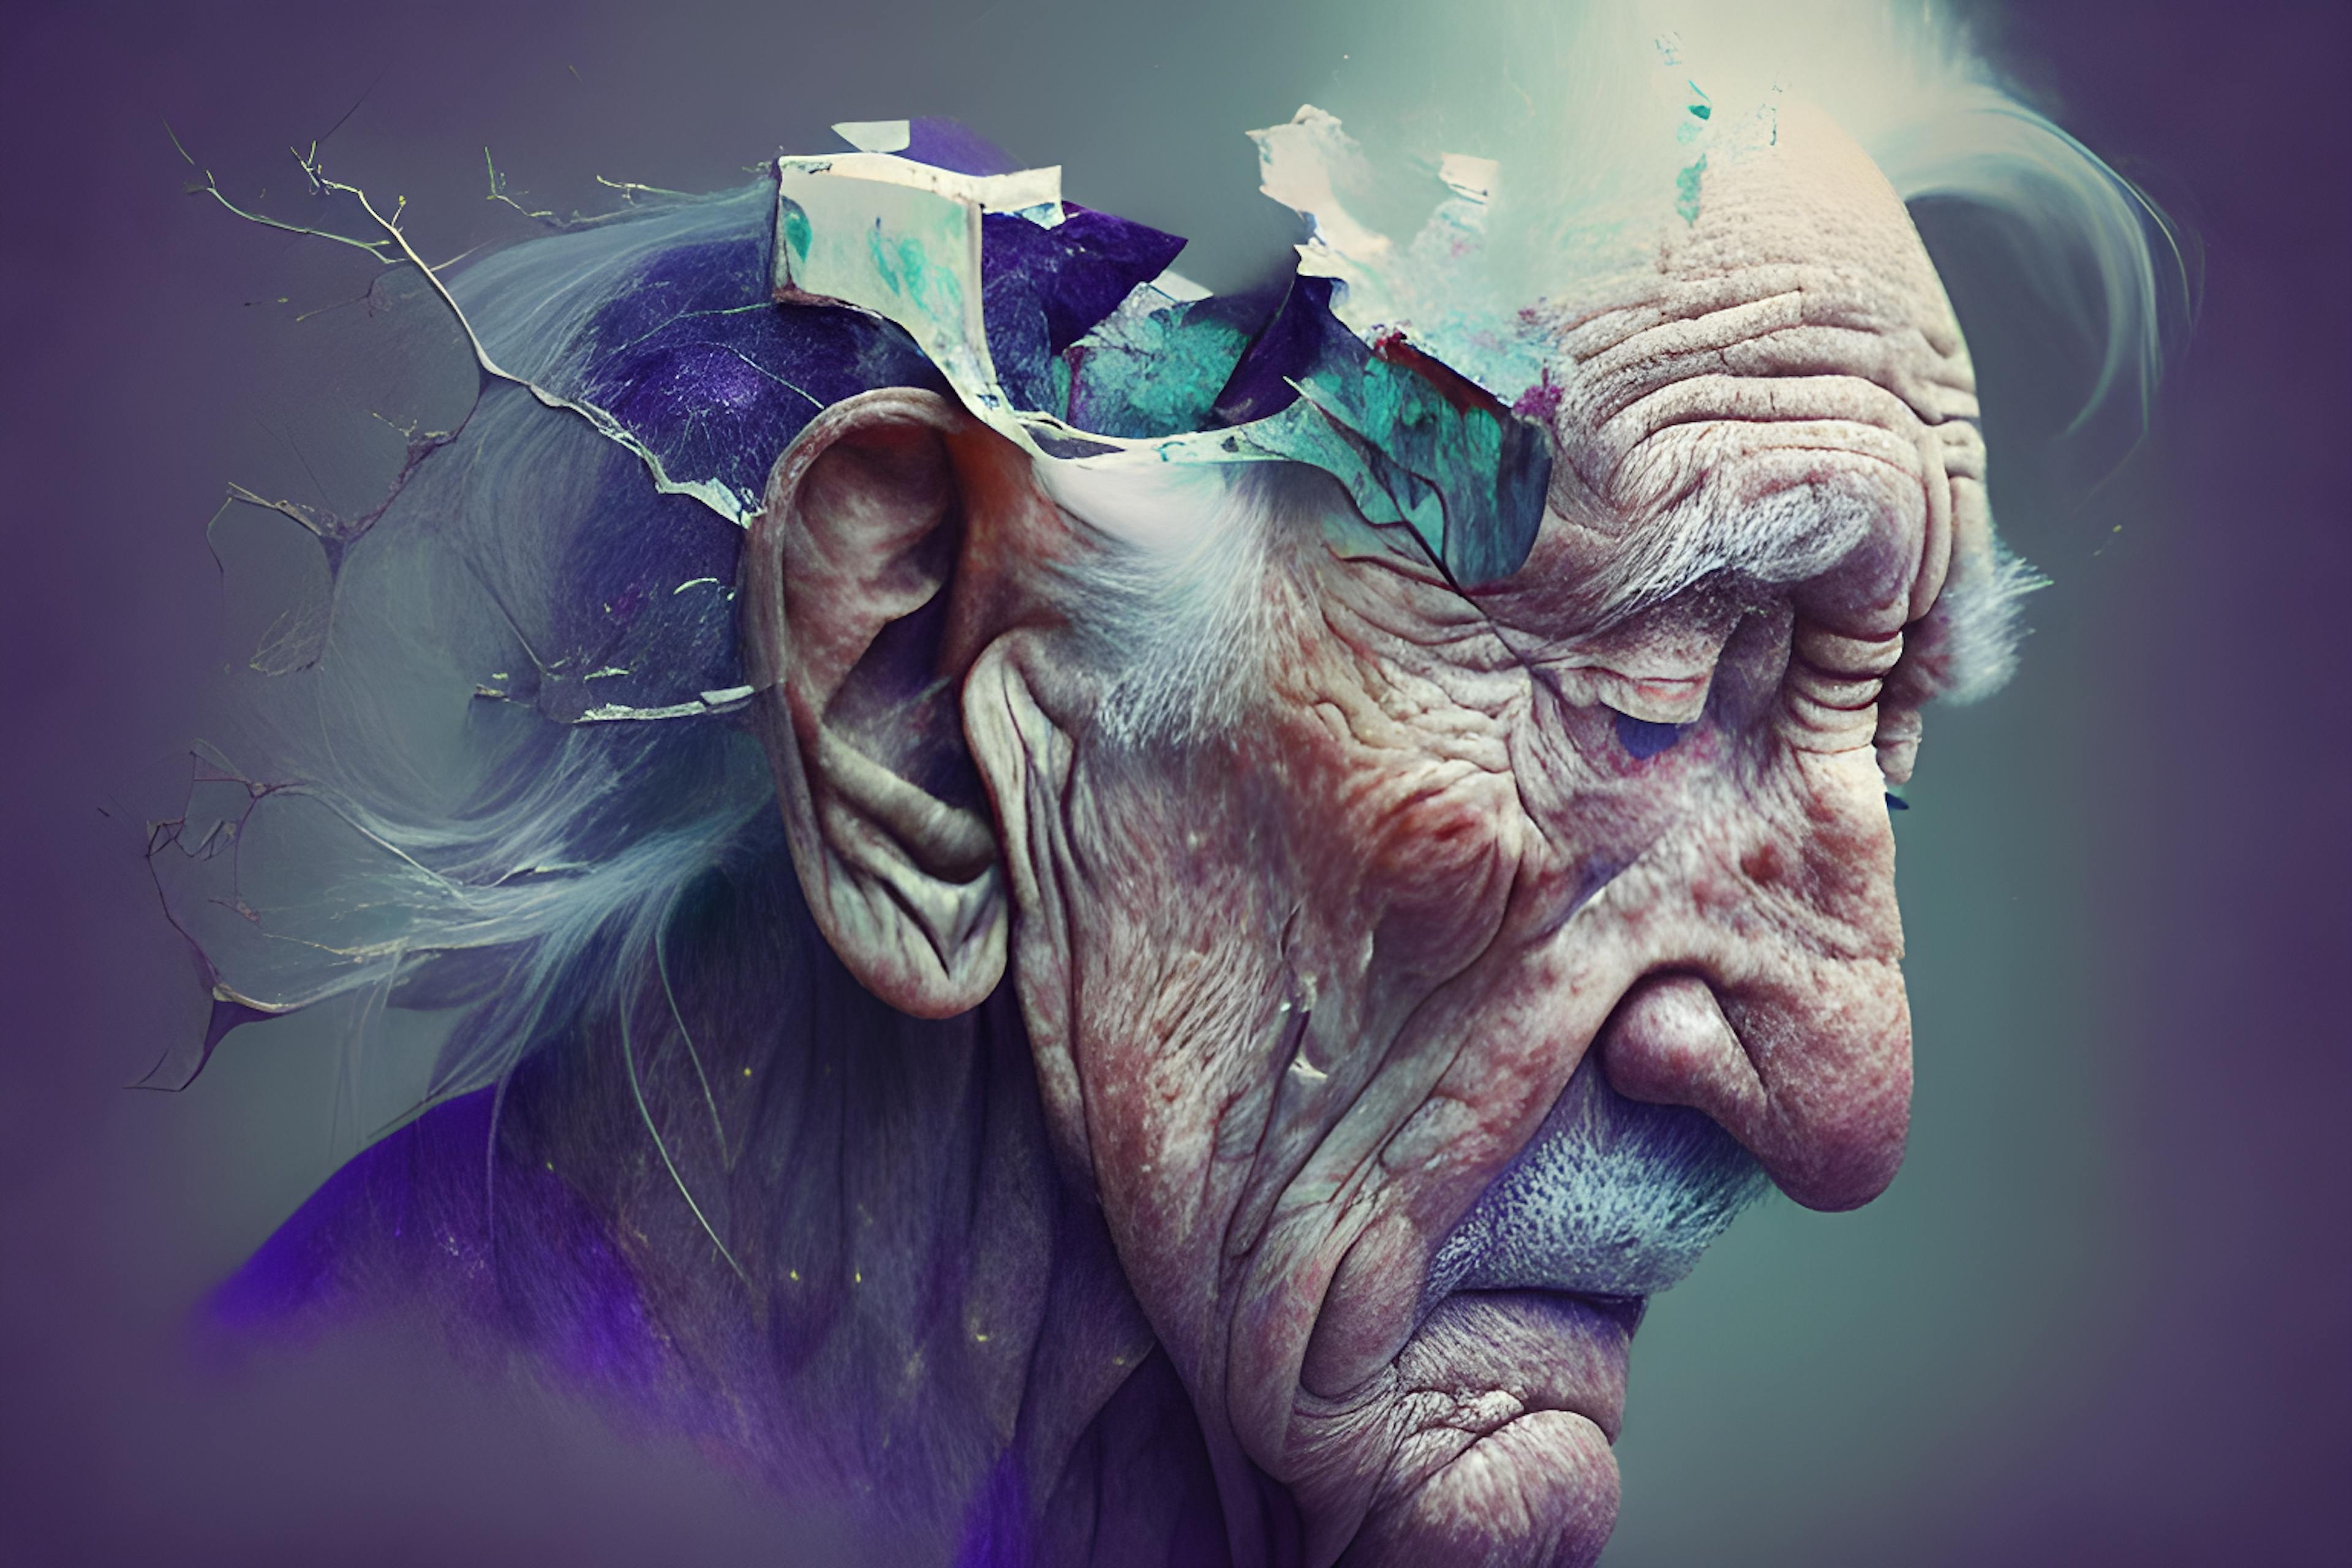 featured image - Học một ngôn ngữ mới có thể giúp trì hoãn sự khởi phát của bệnh Alzheimer và chứng mất trí nhớ (Podcast)